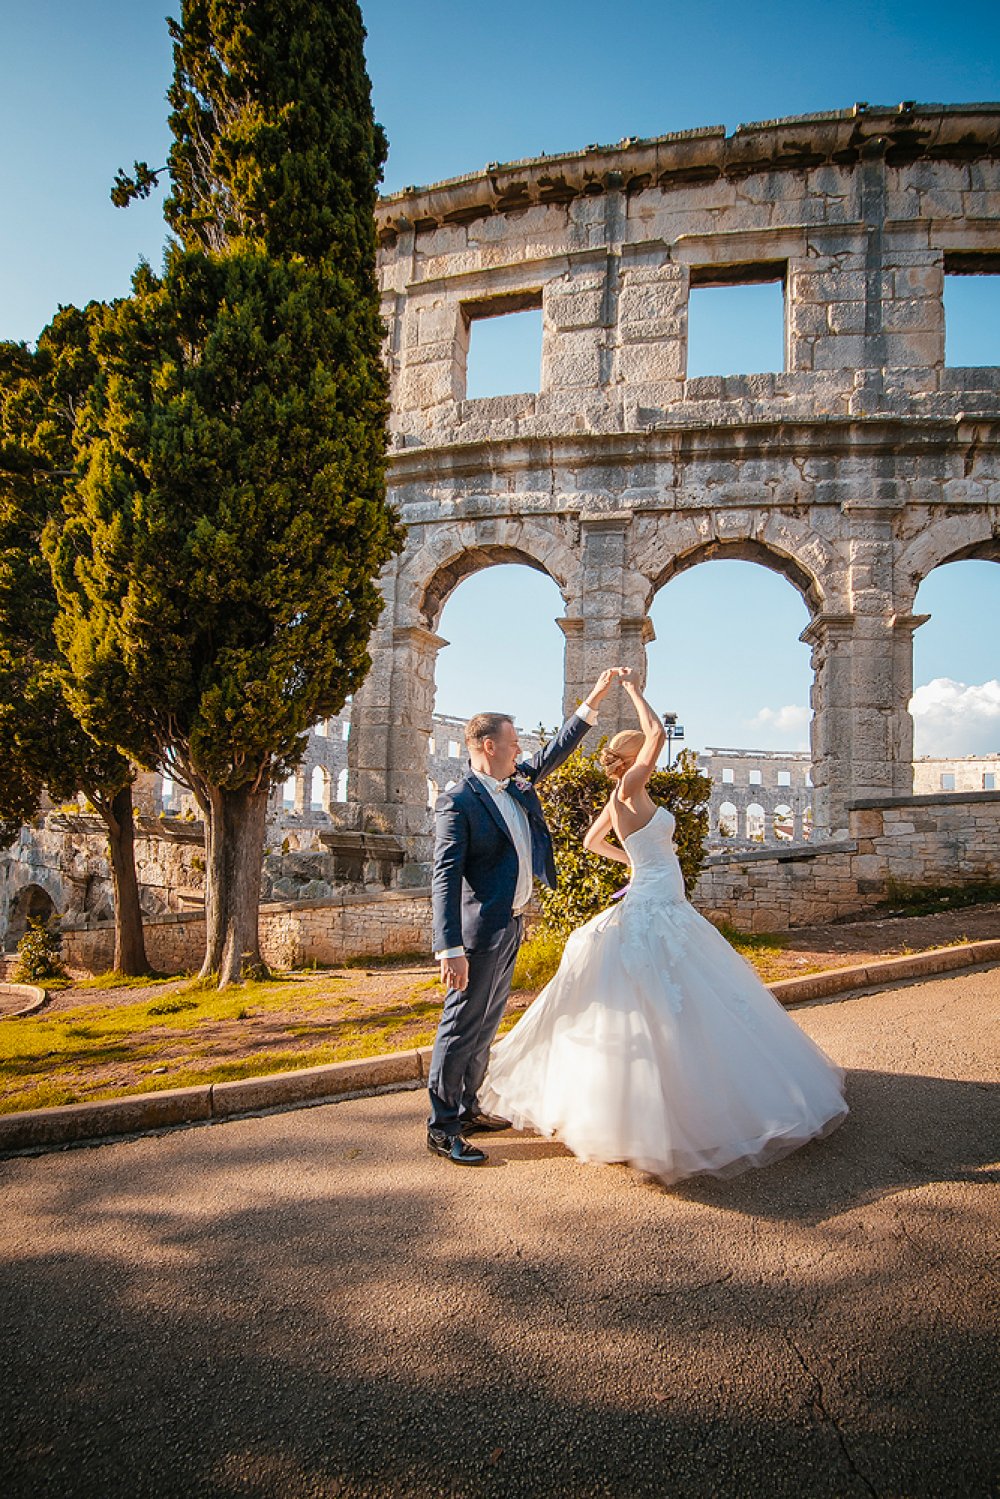 Незабываемая свадьба в Хорватии с проживанием в вилле у моря в течение недели